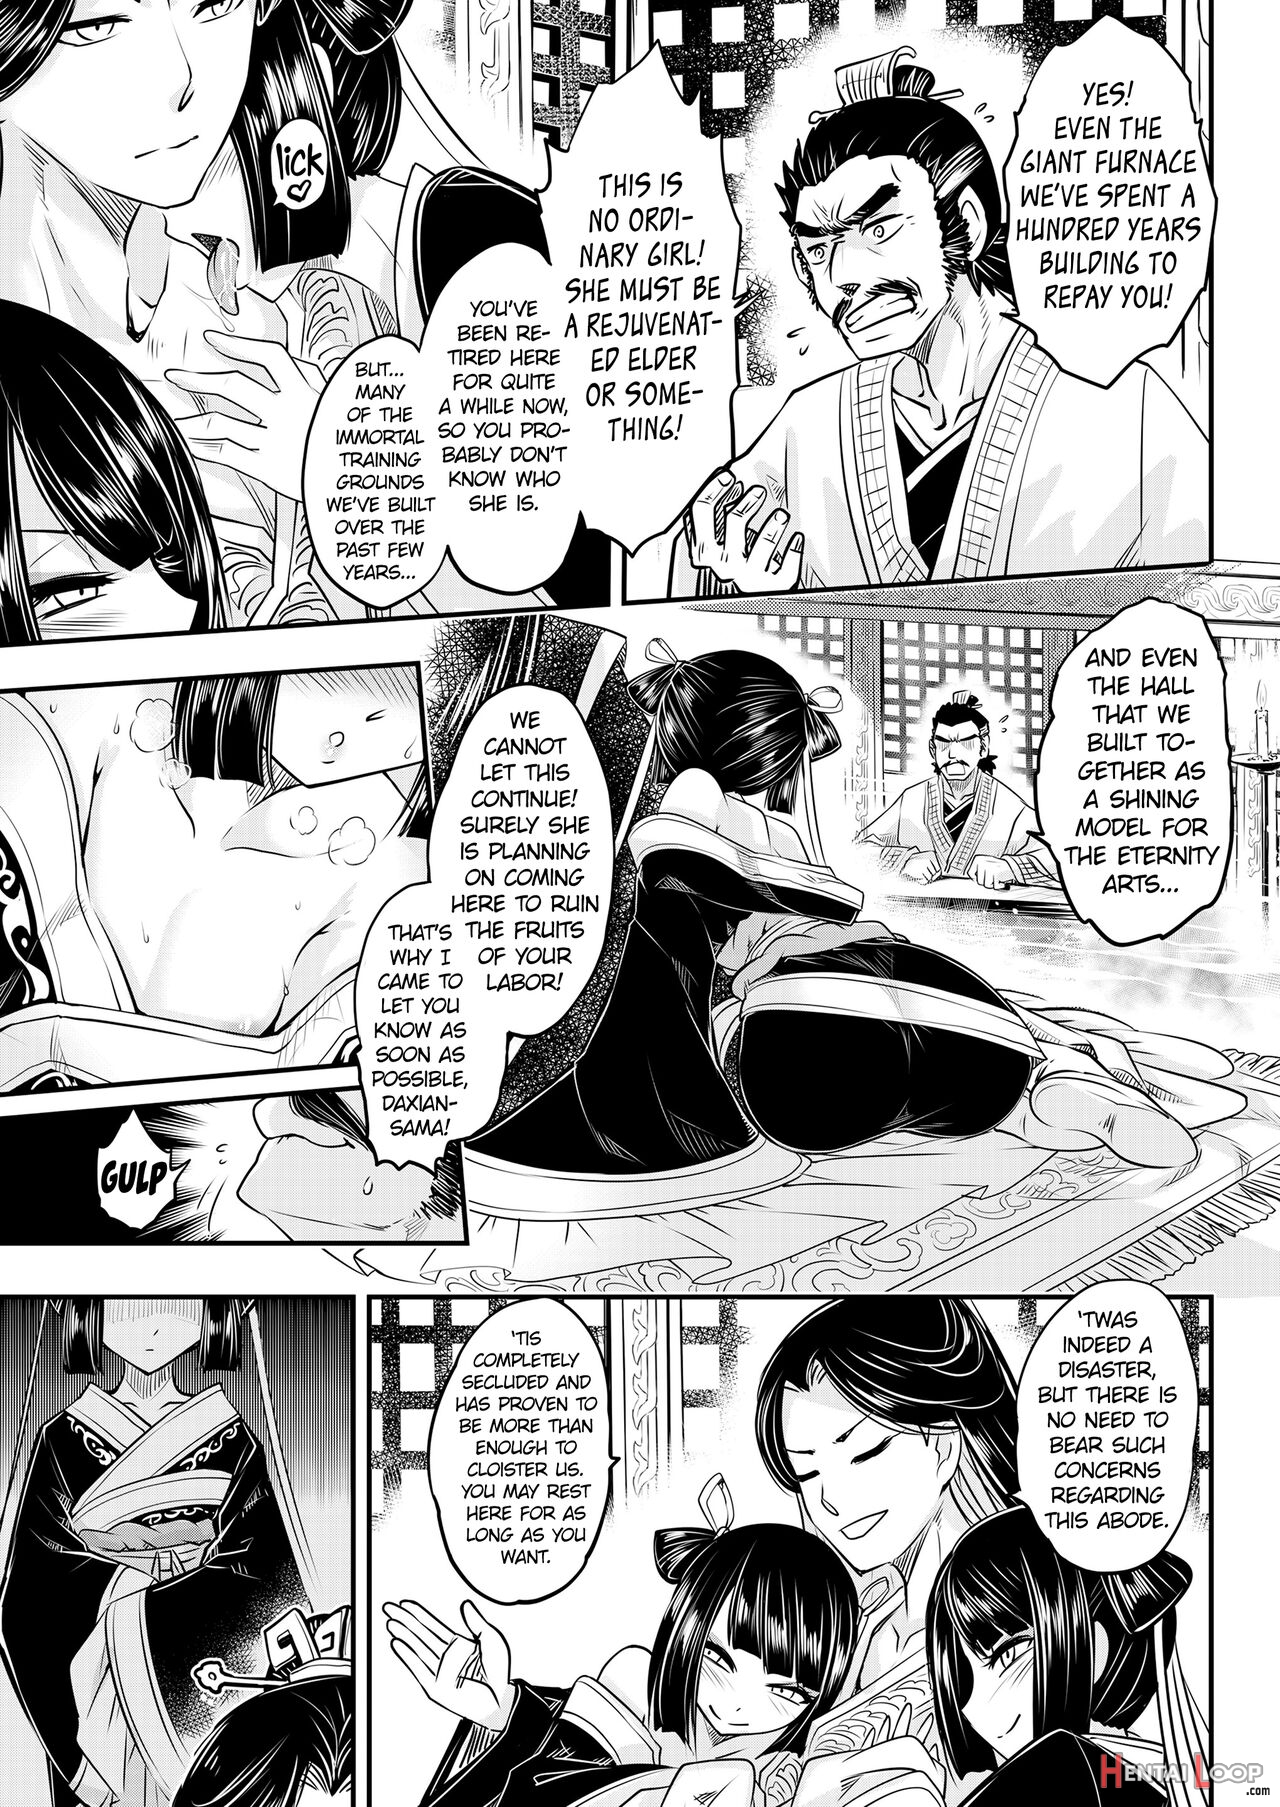 Eisei No Minamoto Part 1 page 7